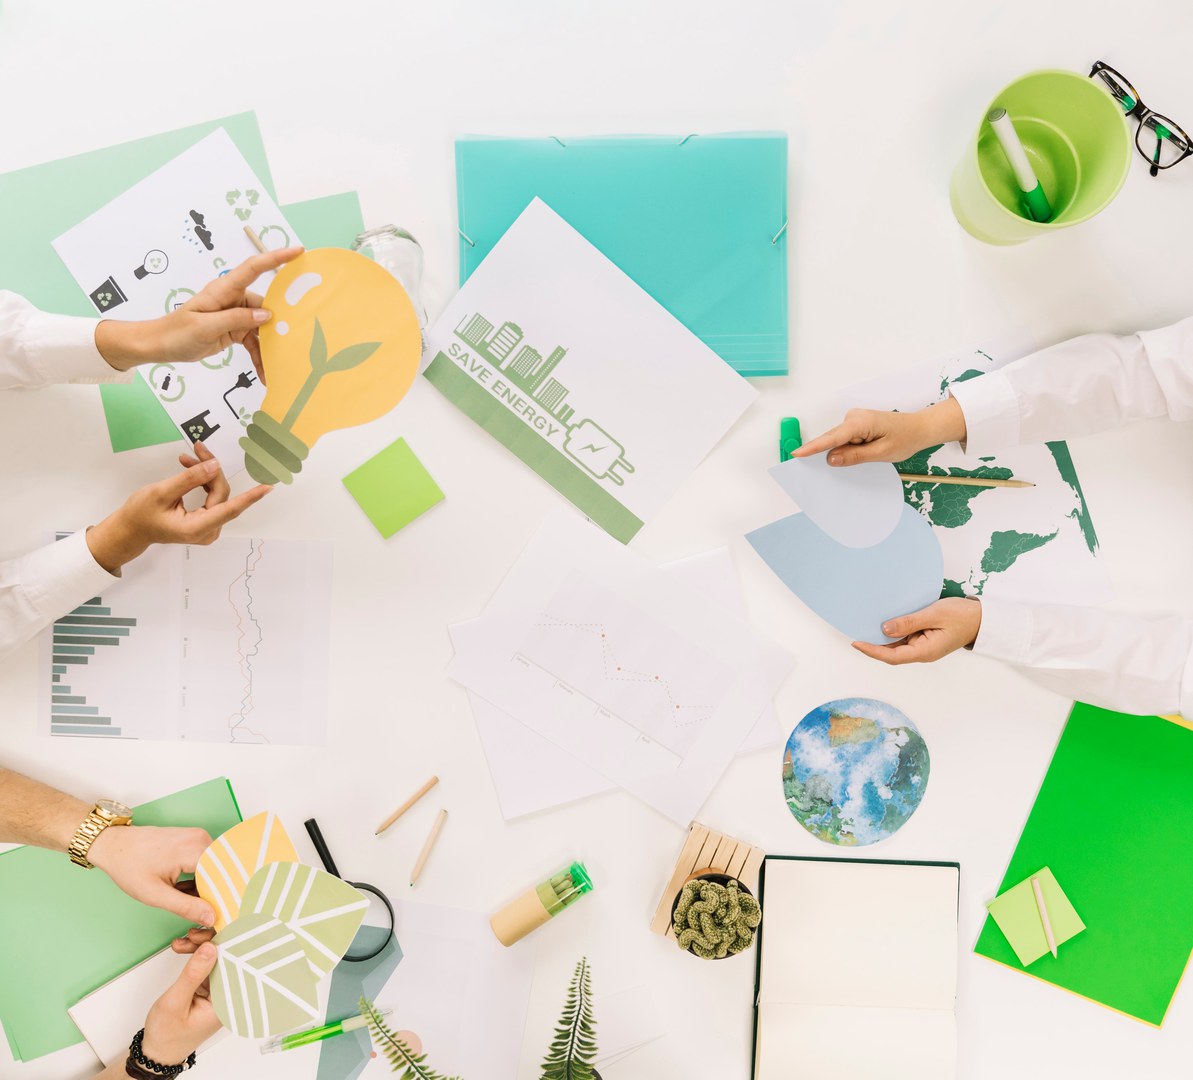 Das Handout "Nachhaltigkeit im Office" beinhaltet wertvolle Tipps und Anregungen für eine nachhaltigere Gestaltung des Arbeitsalltags.